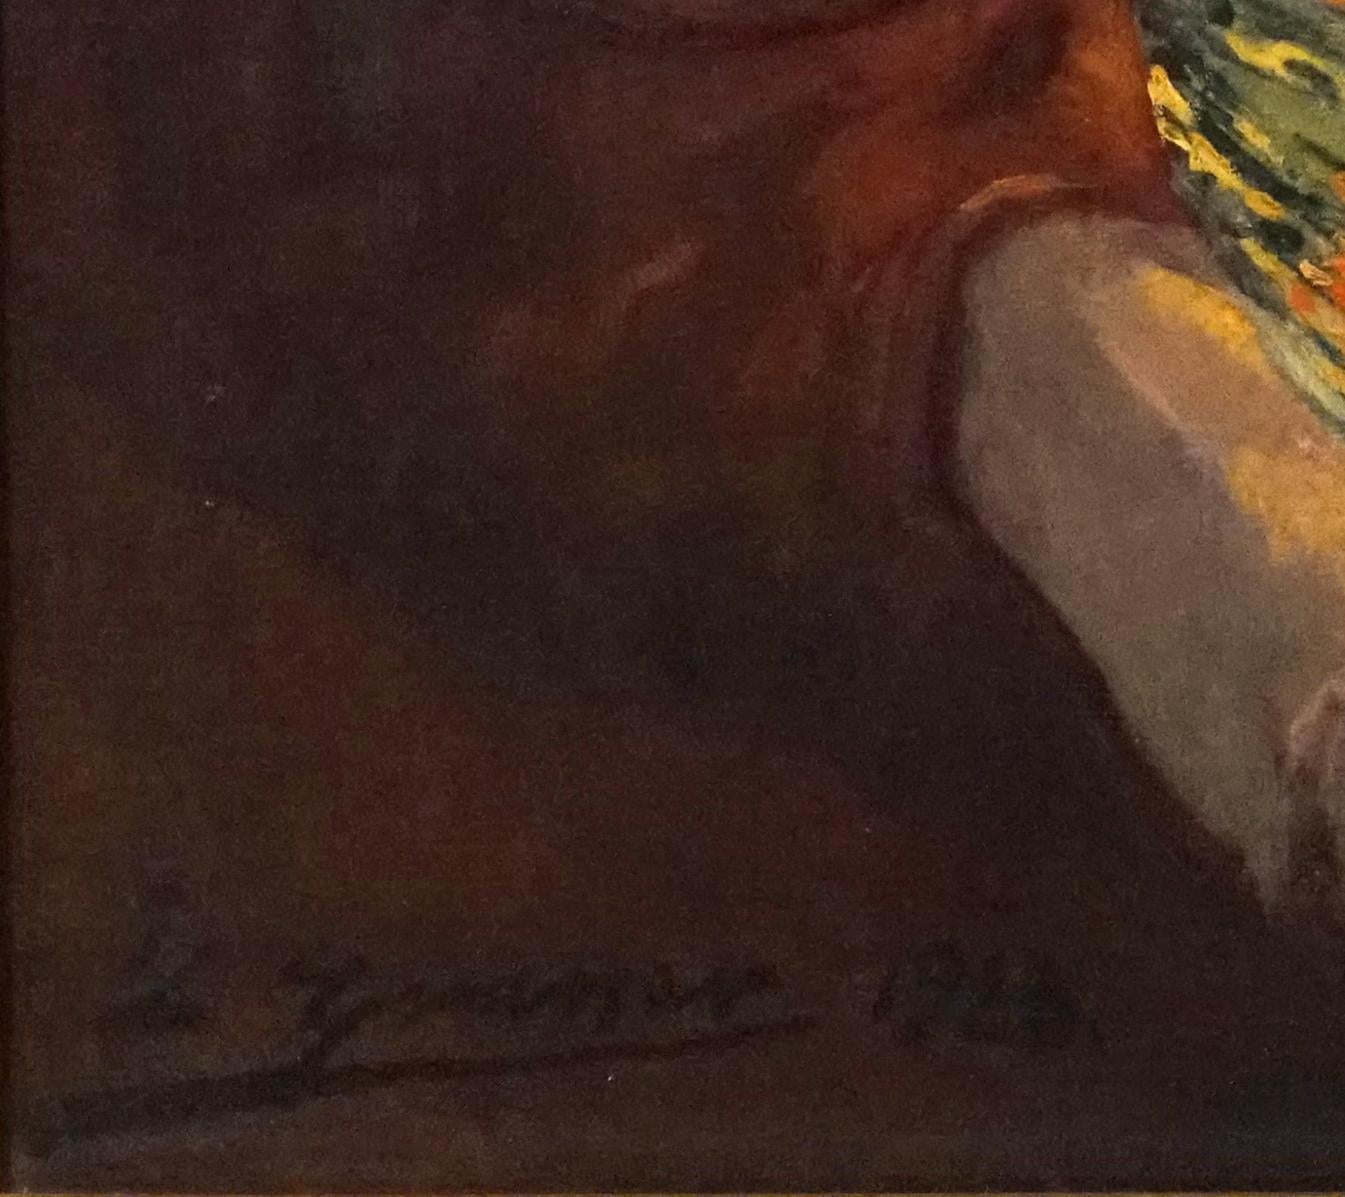 LOUIS GRANER Y ARRUFI 
(Spanier, 1863-1929)
Die Glut 1923

öl auf Leinwand
Signiert und datiert 23 unten links
In einem feinen geschnitzten Rahmen aus Giltwood
33 mal 25 ½ Zoll.  W/Rahmen 44 x 35 ½ Zoll.

Luis Graner y Arrufi wurde 1863 in Barcelona